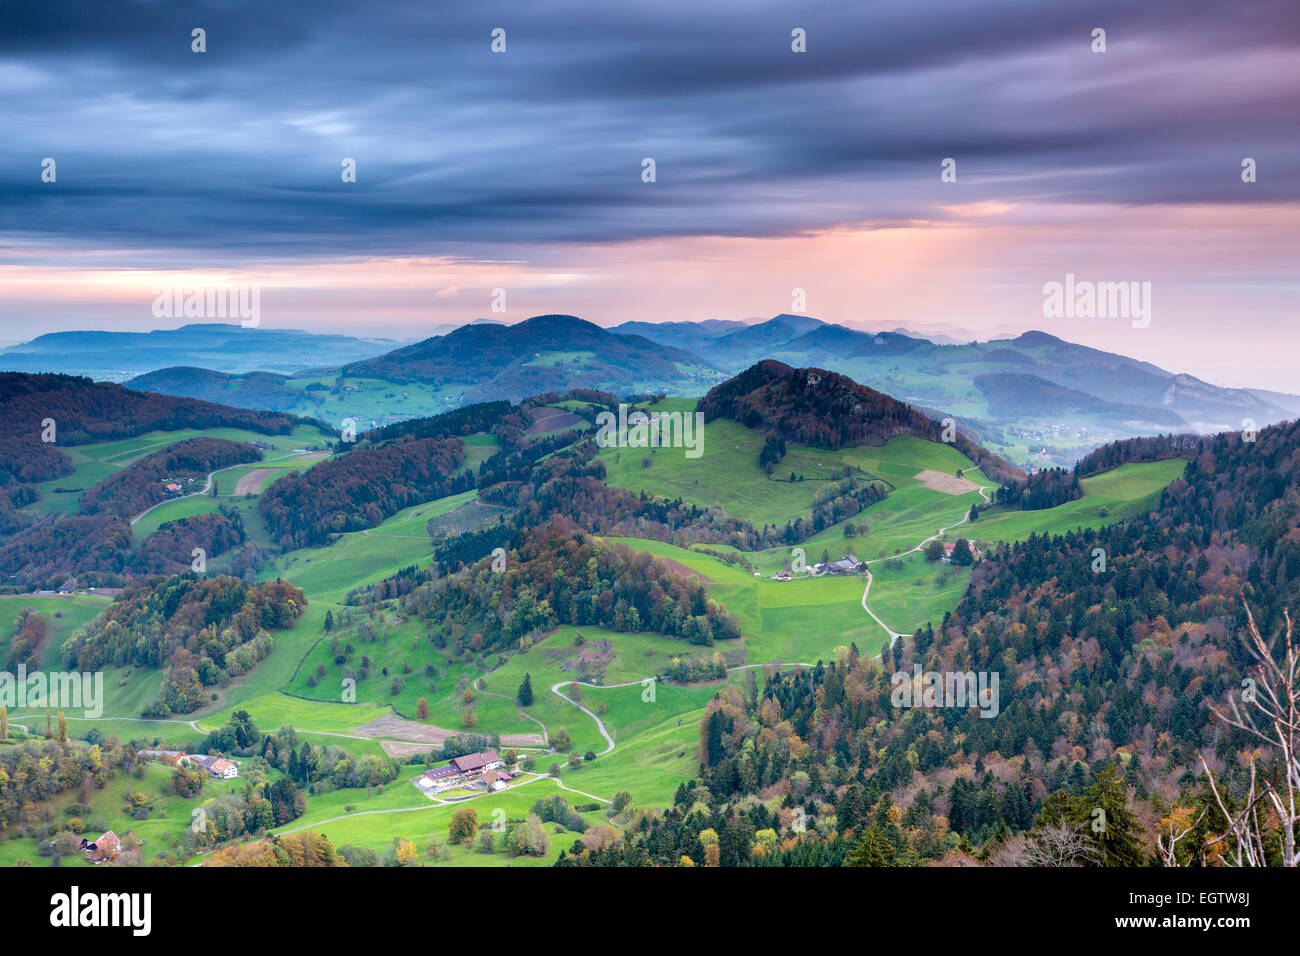 Vue du Belchenflue sur la frontière de canton de Bâle-Campagne et le canton de Soleure, dans les montagnes du Jura suisse. Banque D'Images